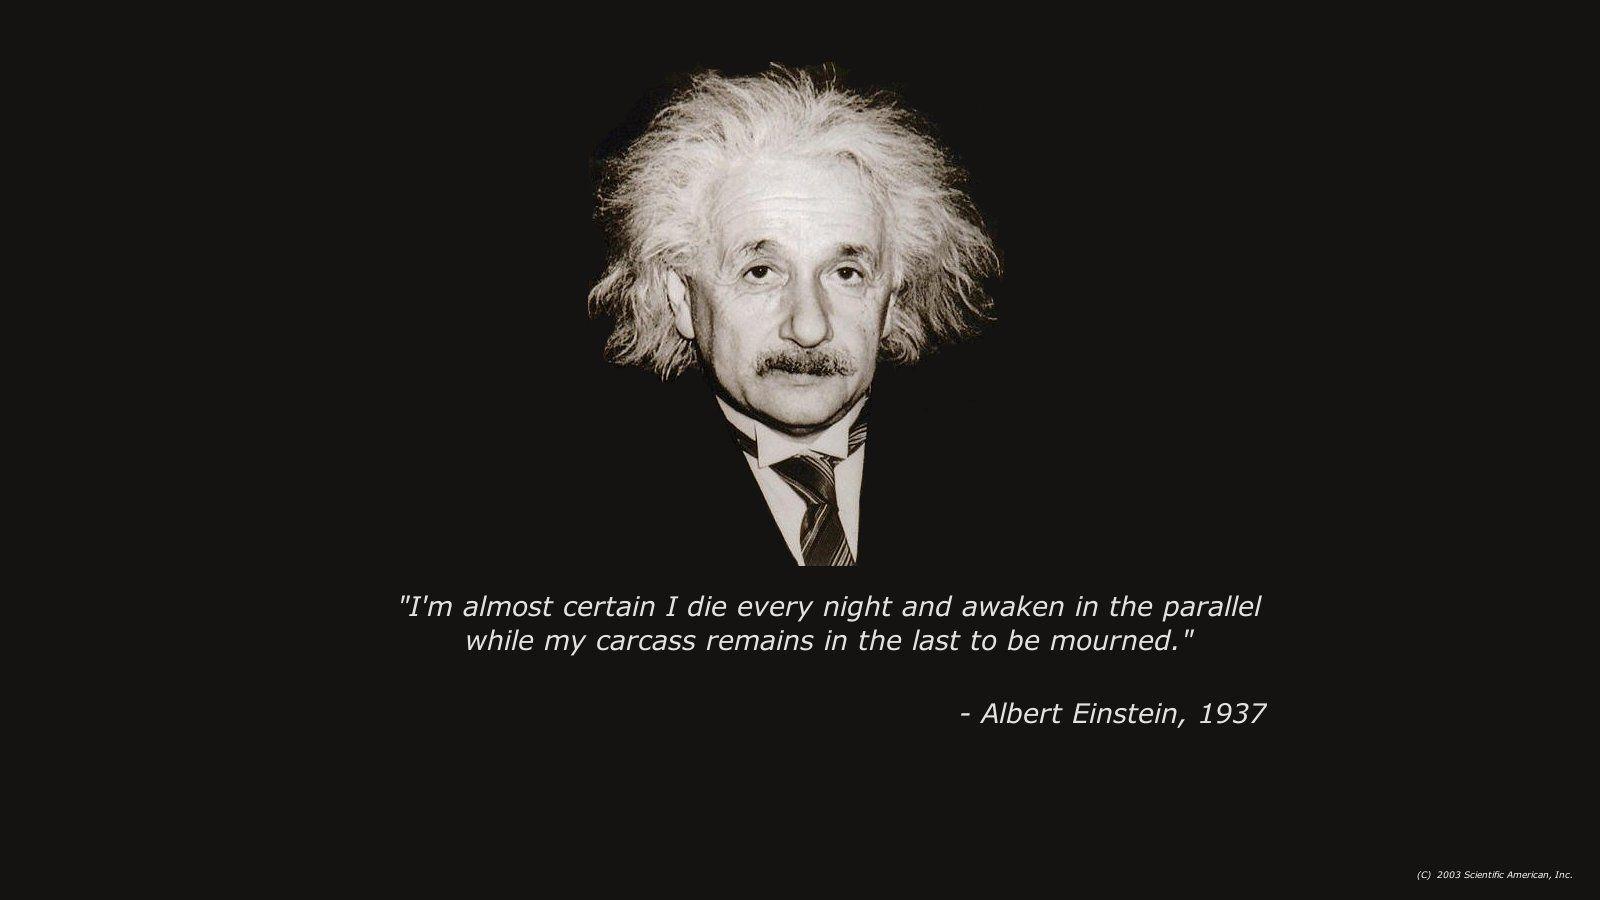 Albert Einstein Quotes Wallpapers - Albert Einstein Quotes Wallpaper Hd - HD Wallpaper 